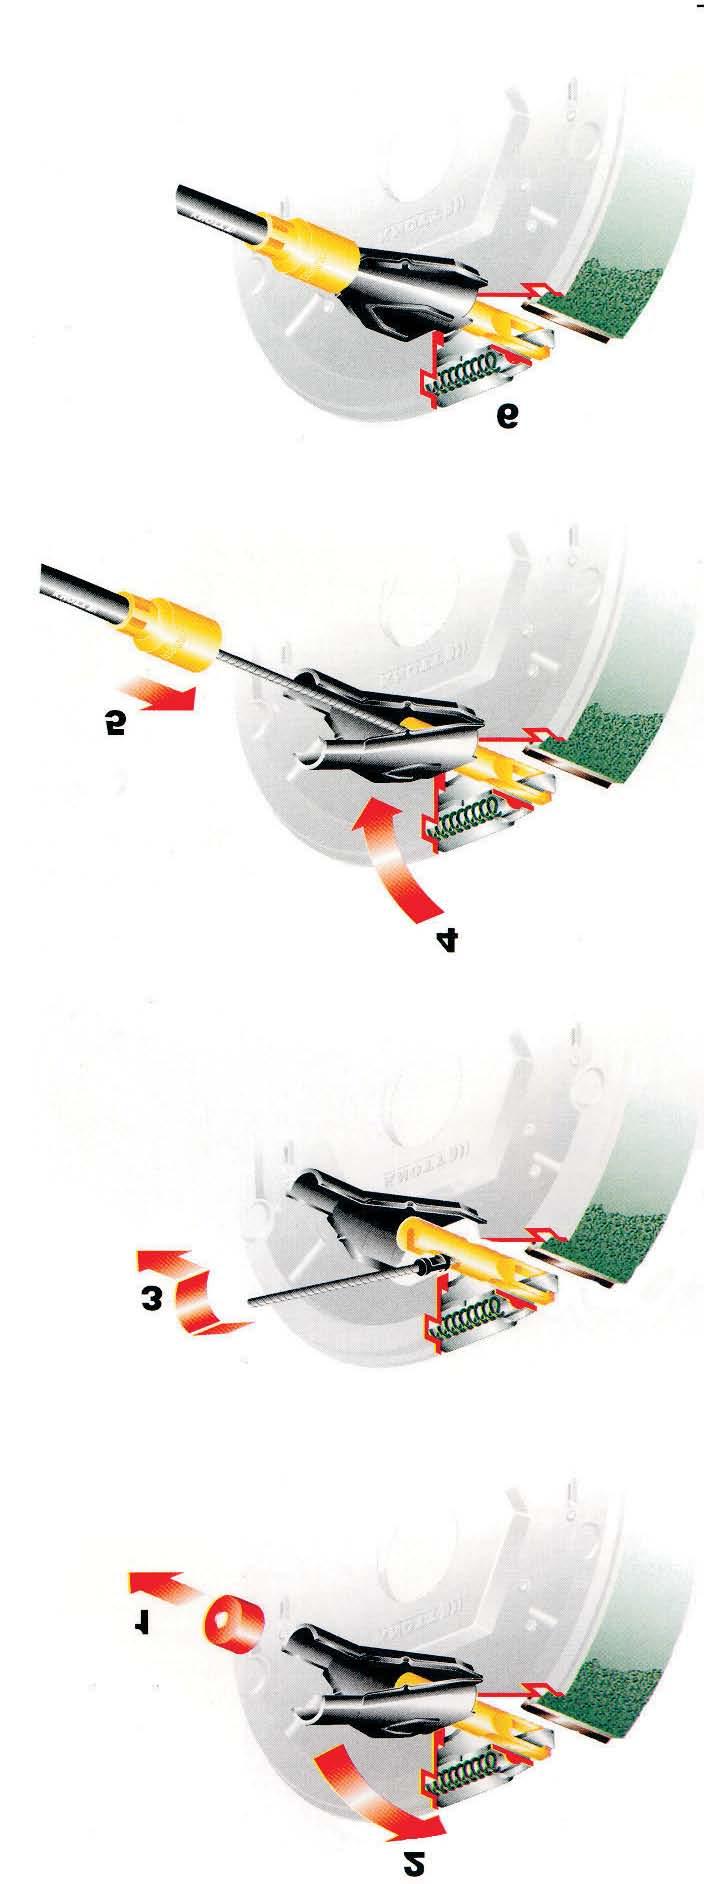 Prosta montaža kočione sajle 1. Ukloniti zaštitni poklopac 2. Podignuti gornji deo kočionog podupirača 3.